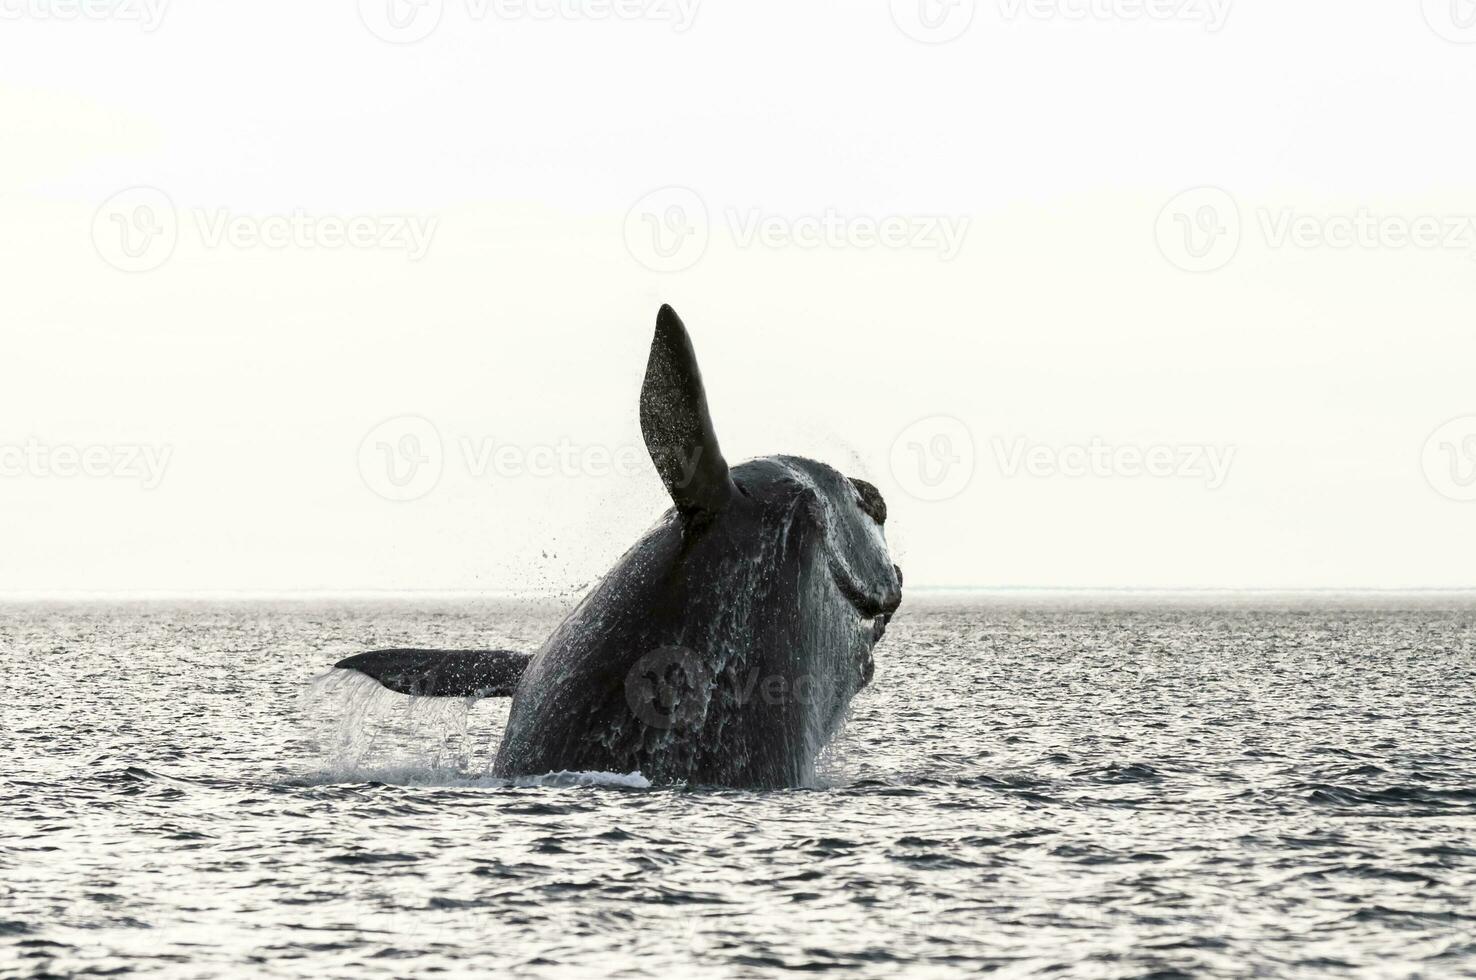 baleia pulando dentro Península valdes,, Patagônia, Argentina foto